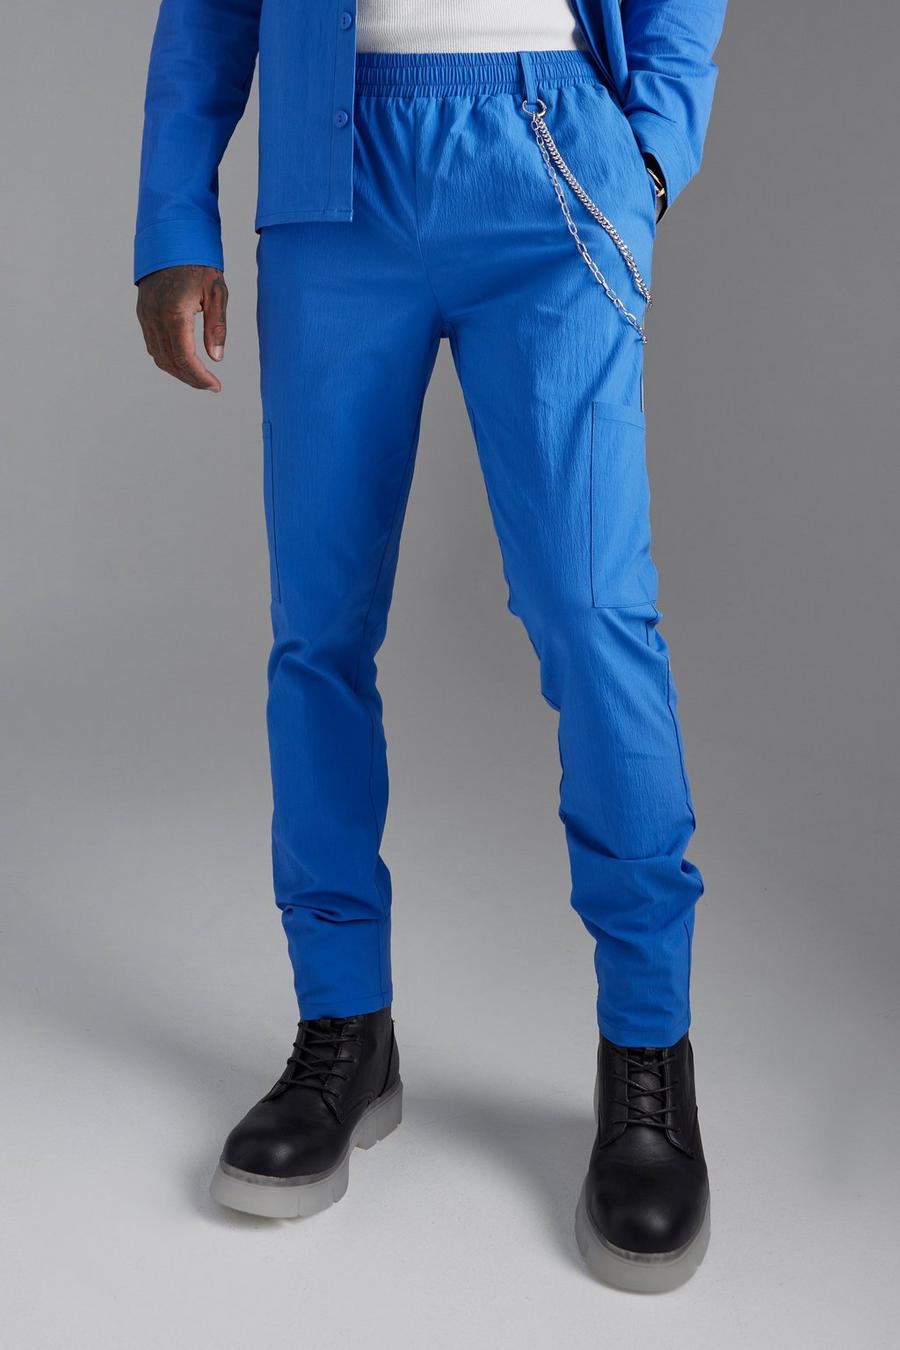 Skinny Crinkle Cargo Chain Jogger Trouser, Cobalt azzurro